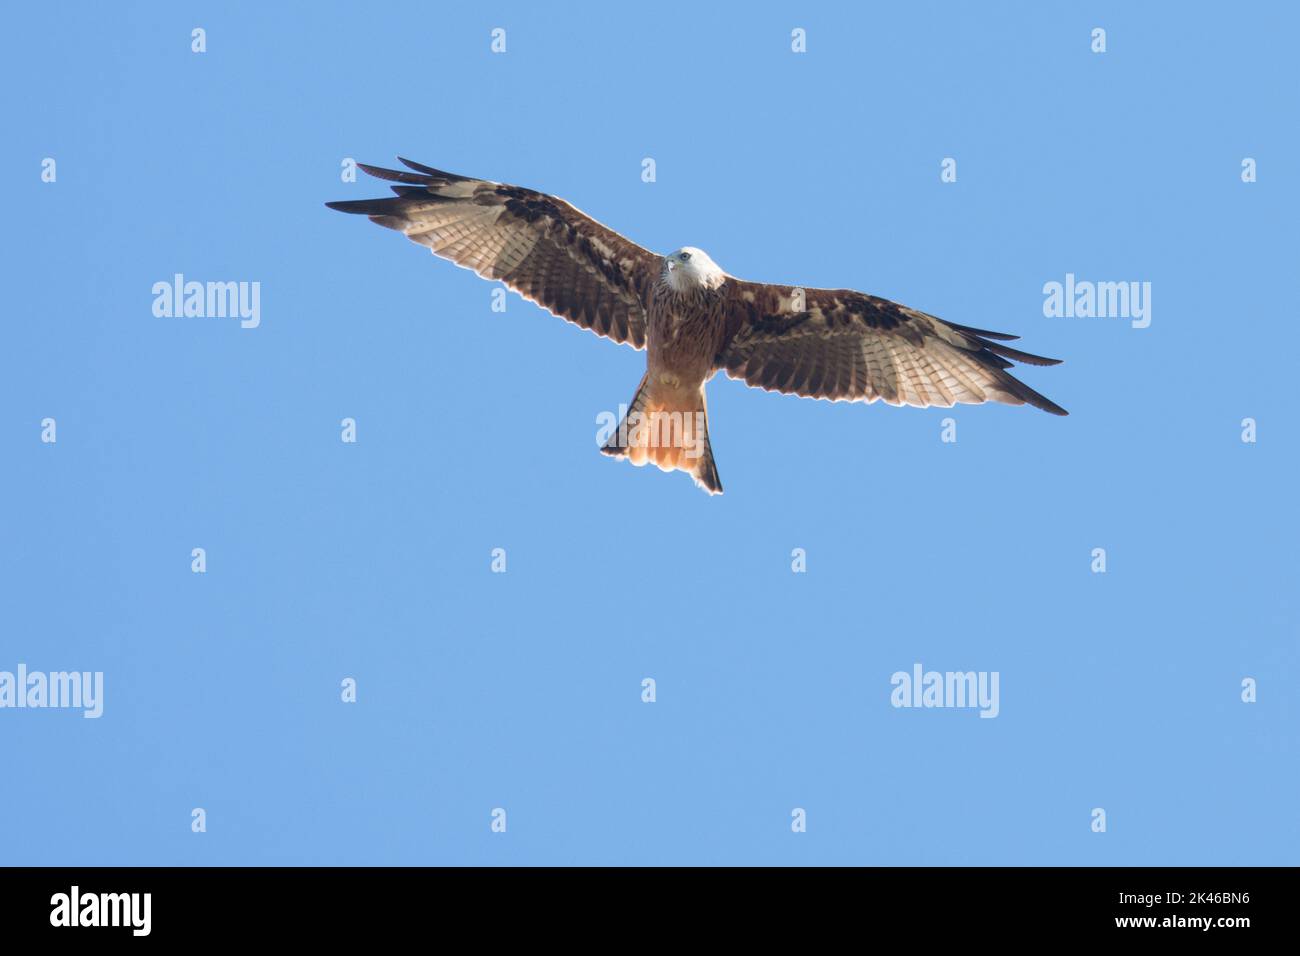 El pájaro Kite rojo, Milvus milvus, volando con alas esparcidas contra un cielo azul, agosto Foto de stock